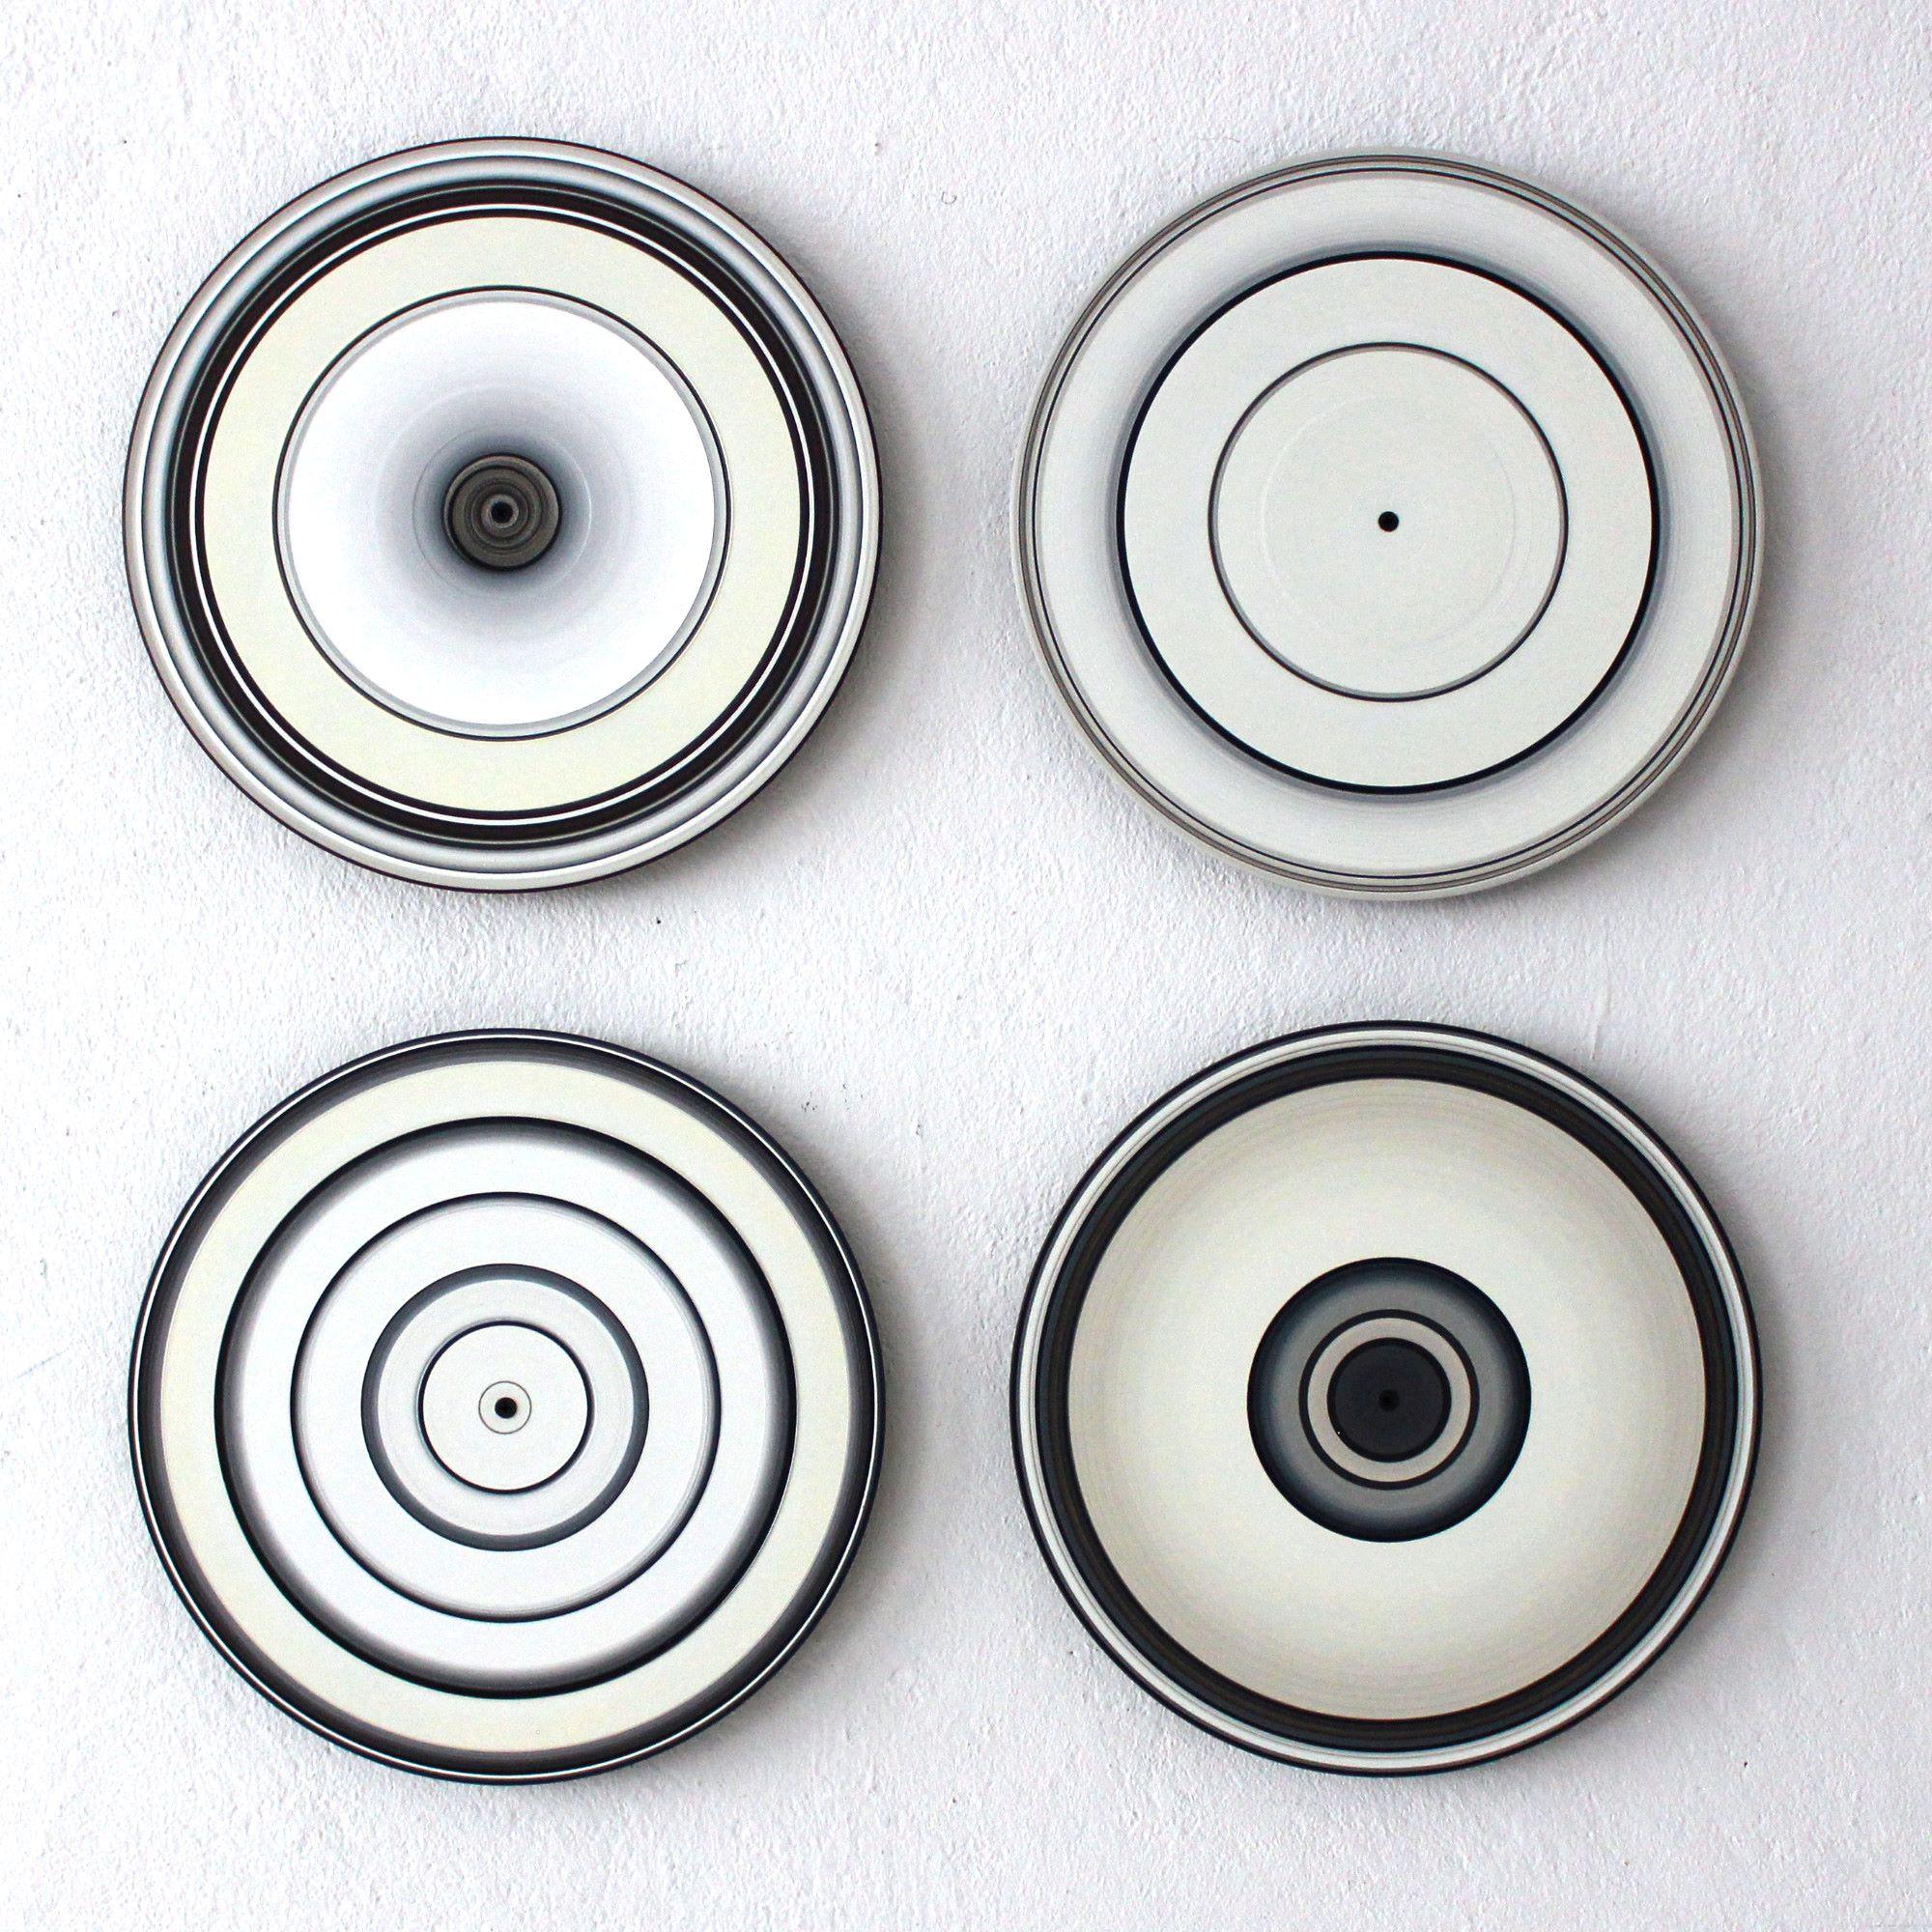 SOUND AND VISION - White Quartett ist eine einzigartige Öl-auf-Vinyl-Installation der deutschen zeitgenössischen Künstlerin Doris Marten mit den Maßen 65 × 65 cm (25,6 × 25,6 Zoll). Jedes Stück hat einen Durchmesser von 30 cm (11,8 Zoll).
Das